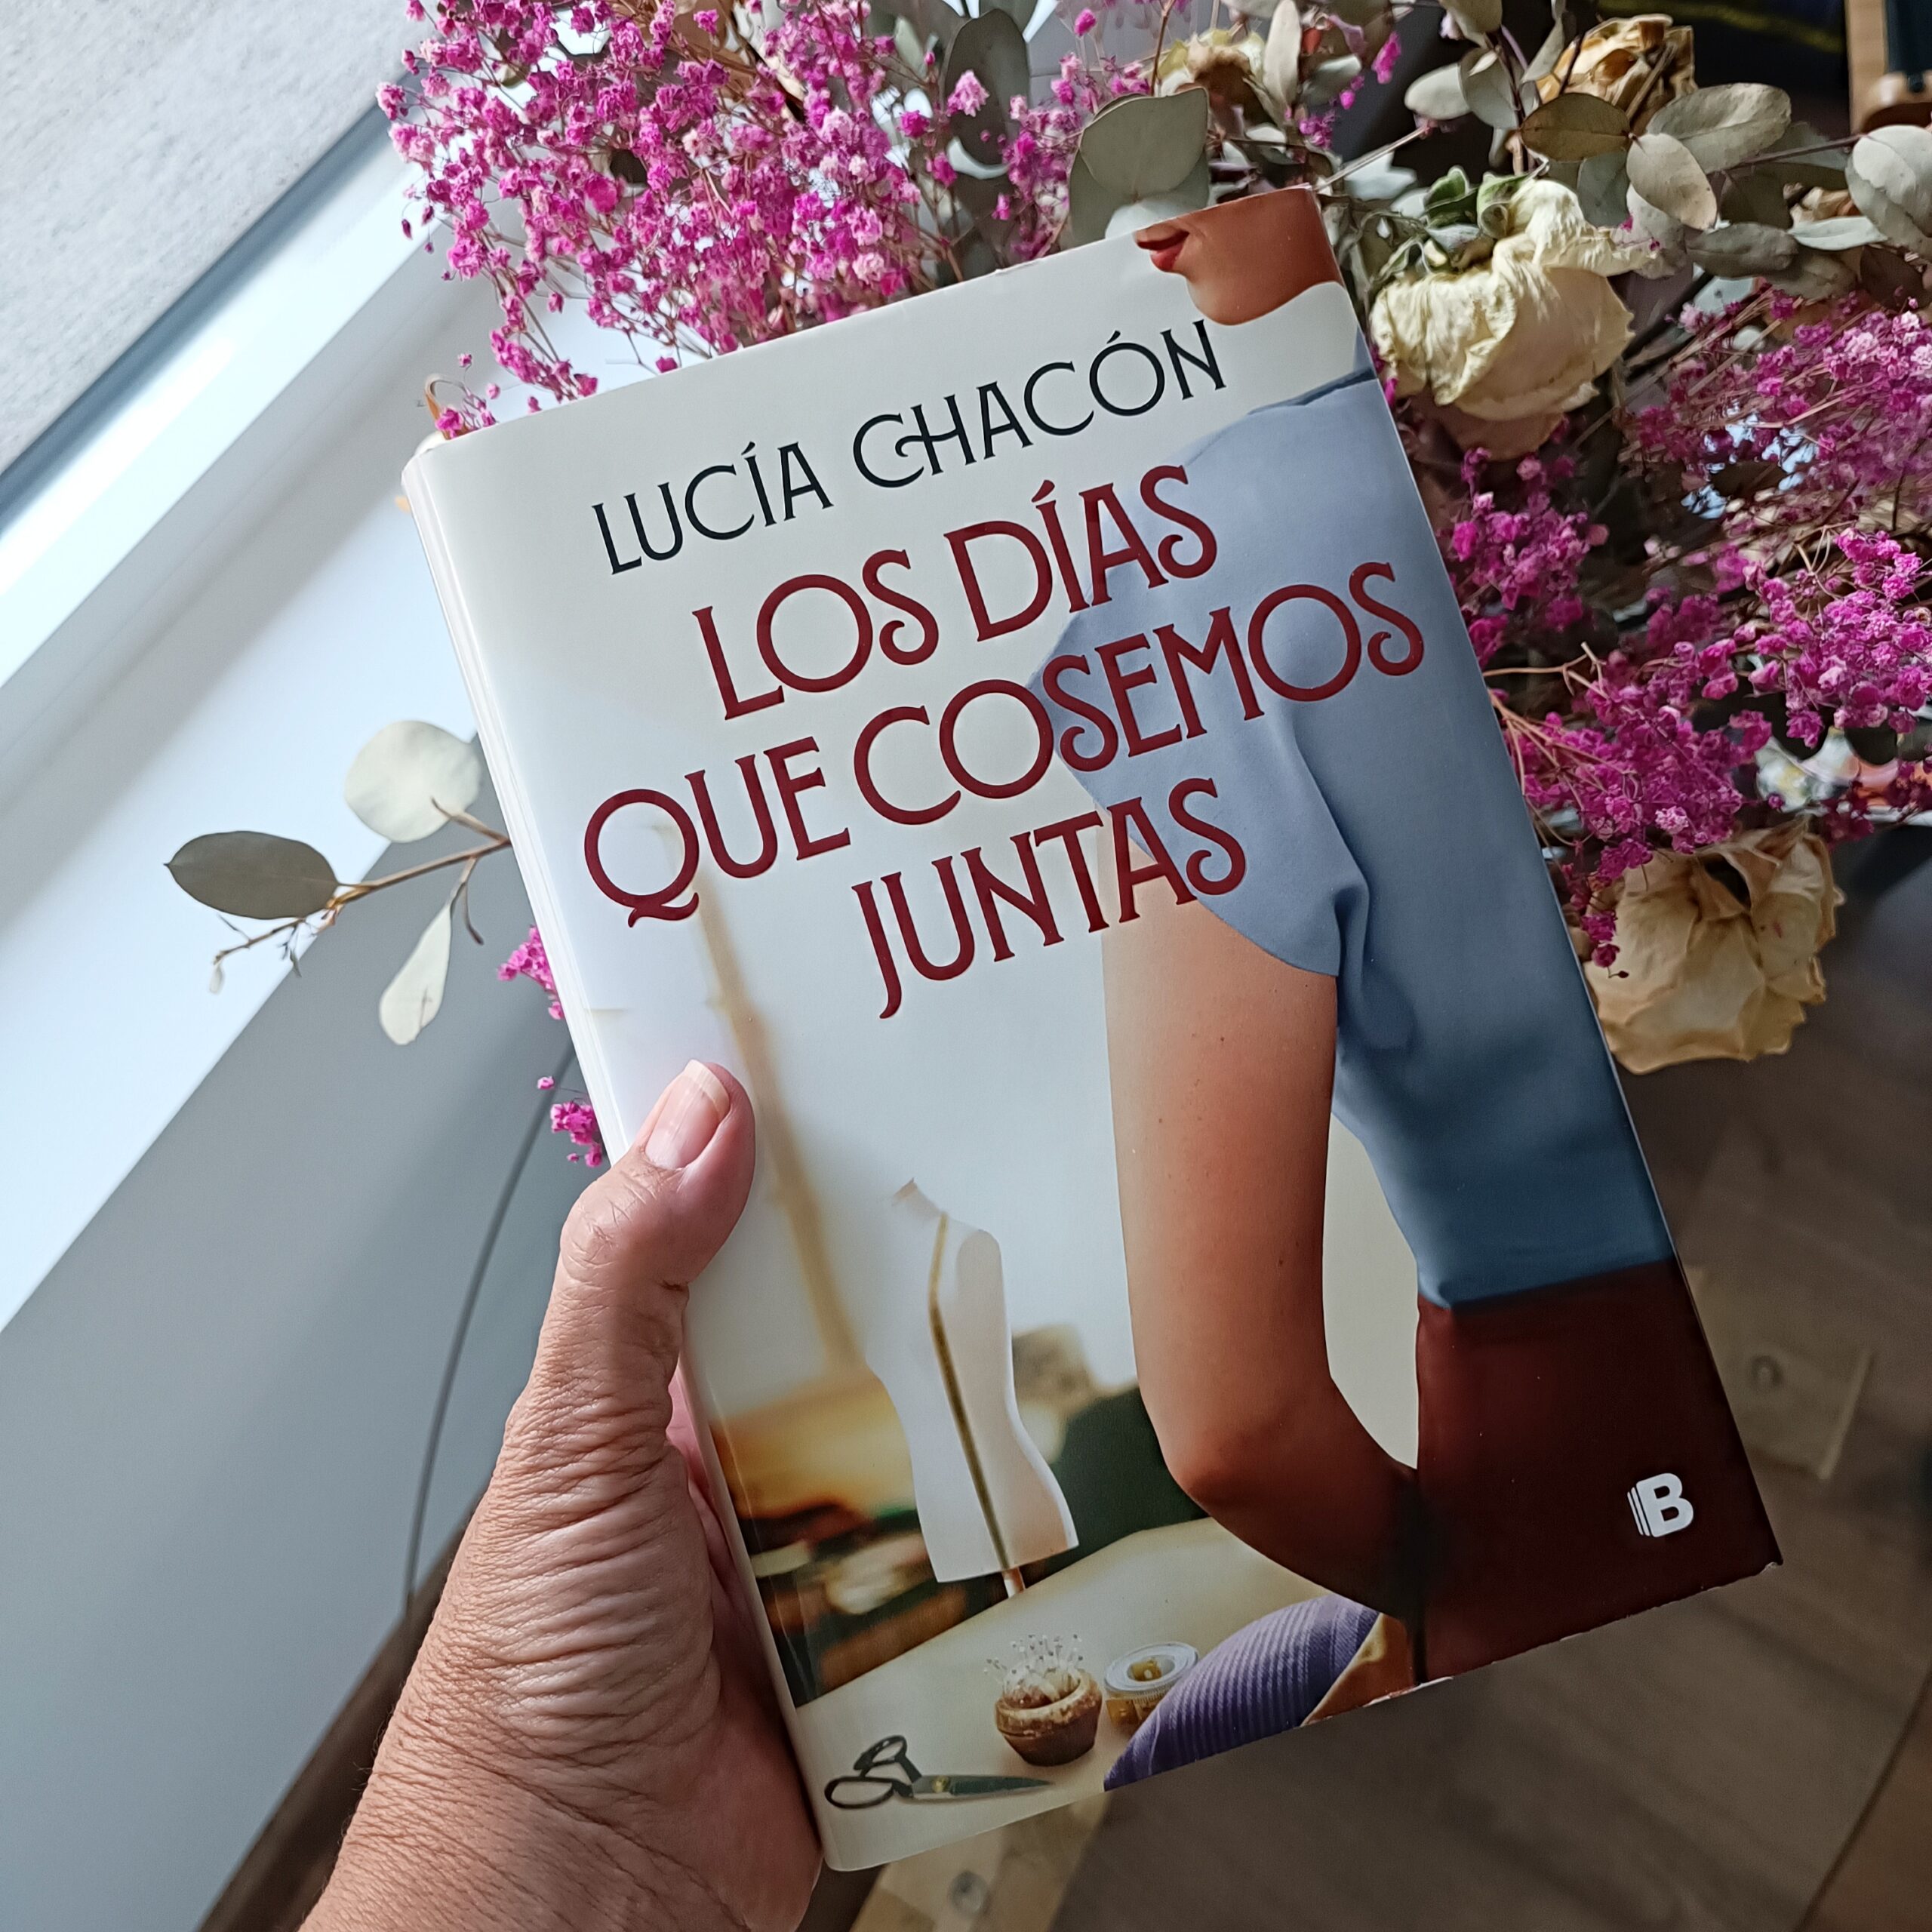 Libro Lucía Chacón - Siete Agujas De Coser